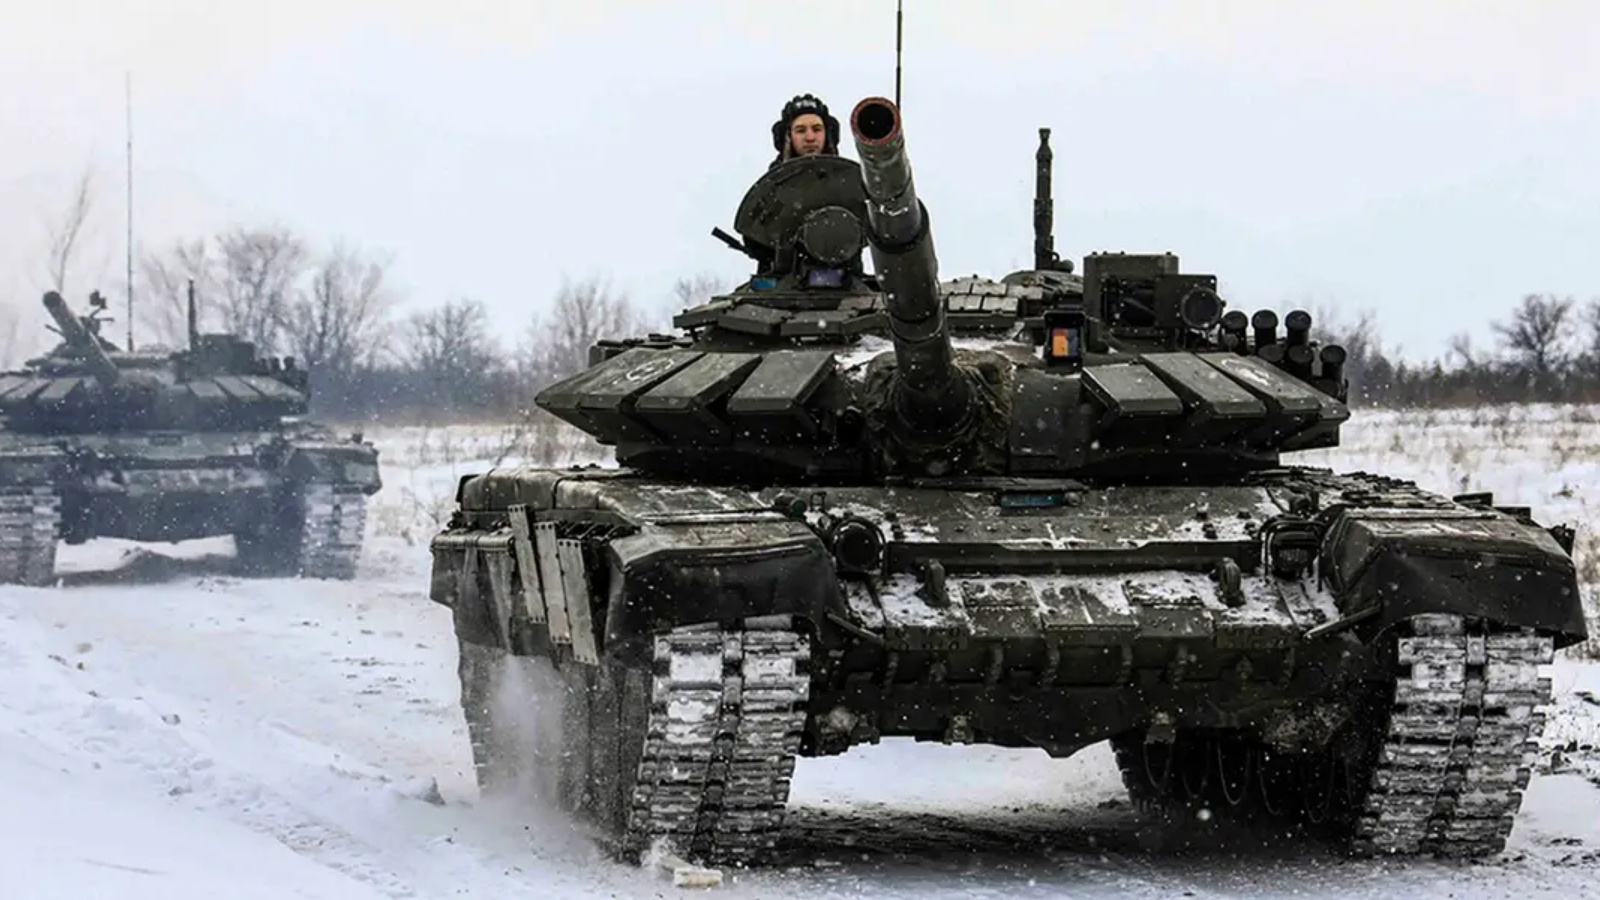 Rosja zmienia strukturę dowodzenia armii z powodu niepowodzeń wojennych